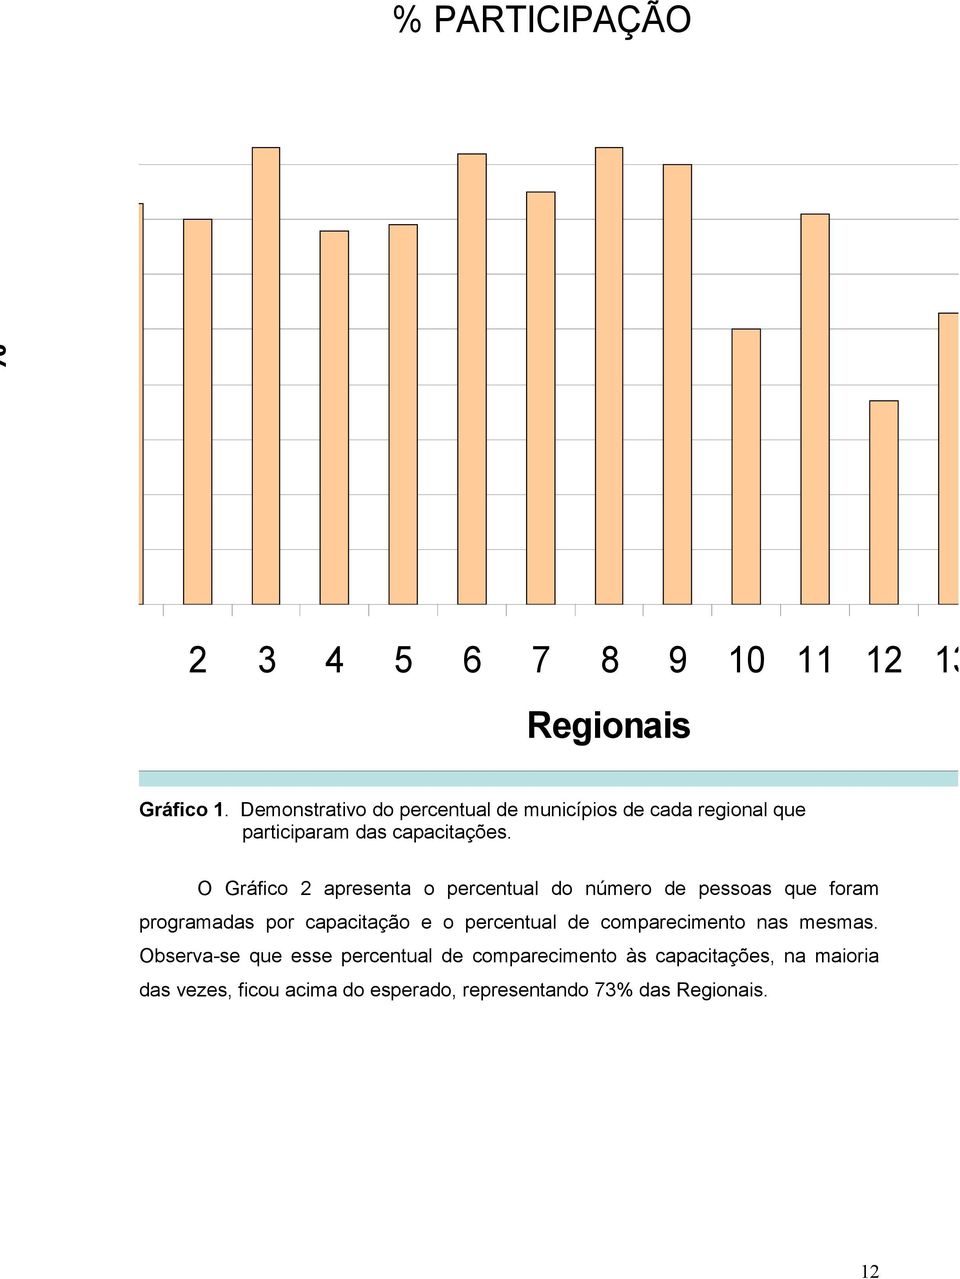 Demonstrativo do percentual de municípios de cada regional que participaram das capacitações.